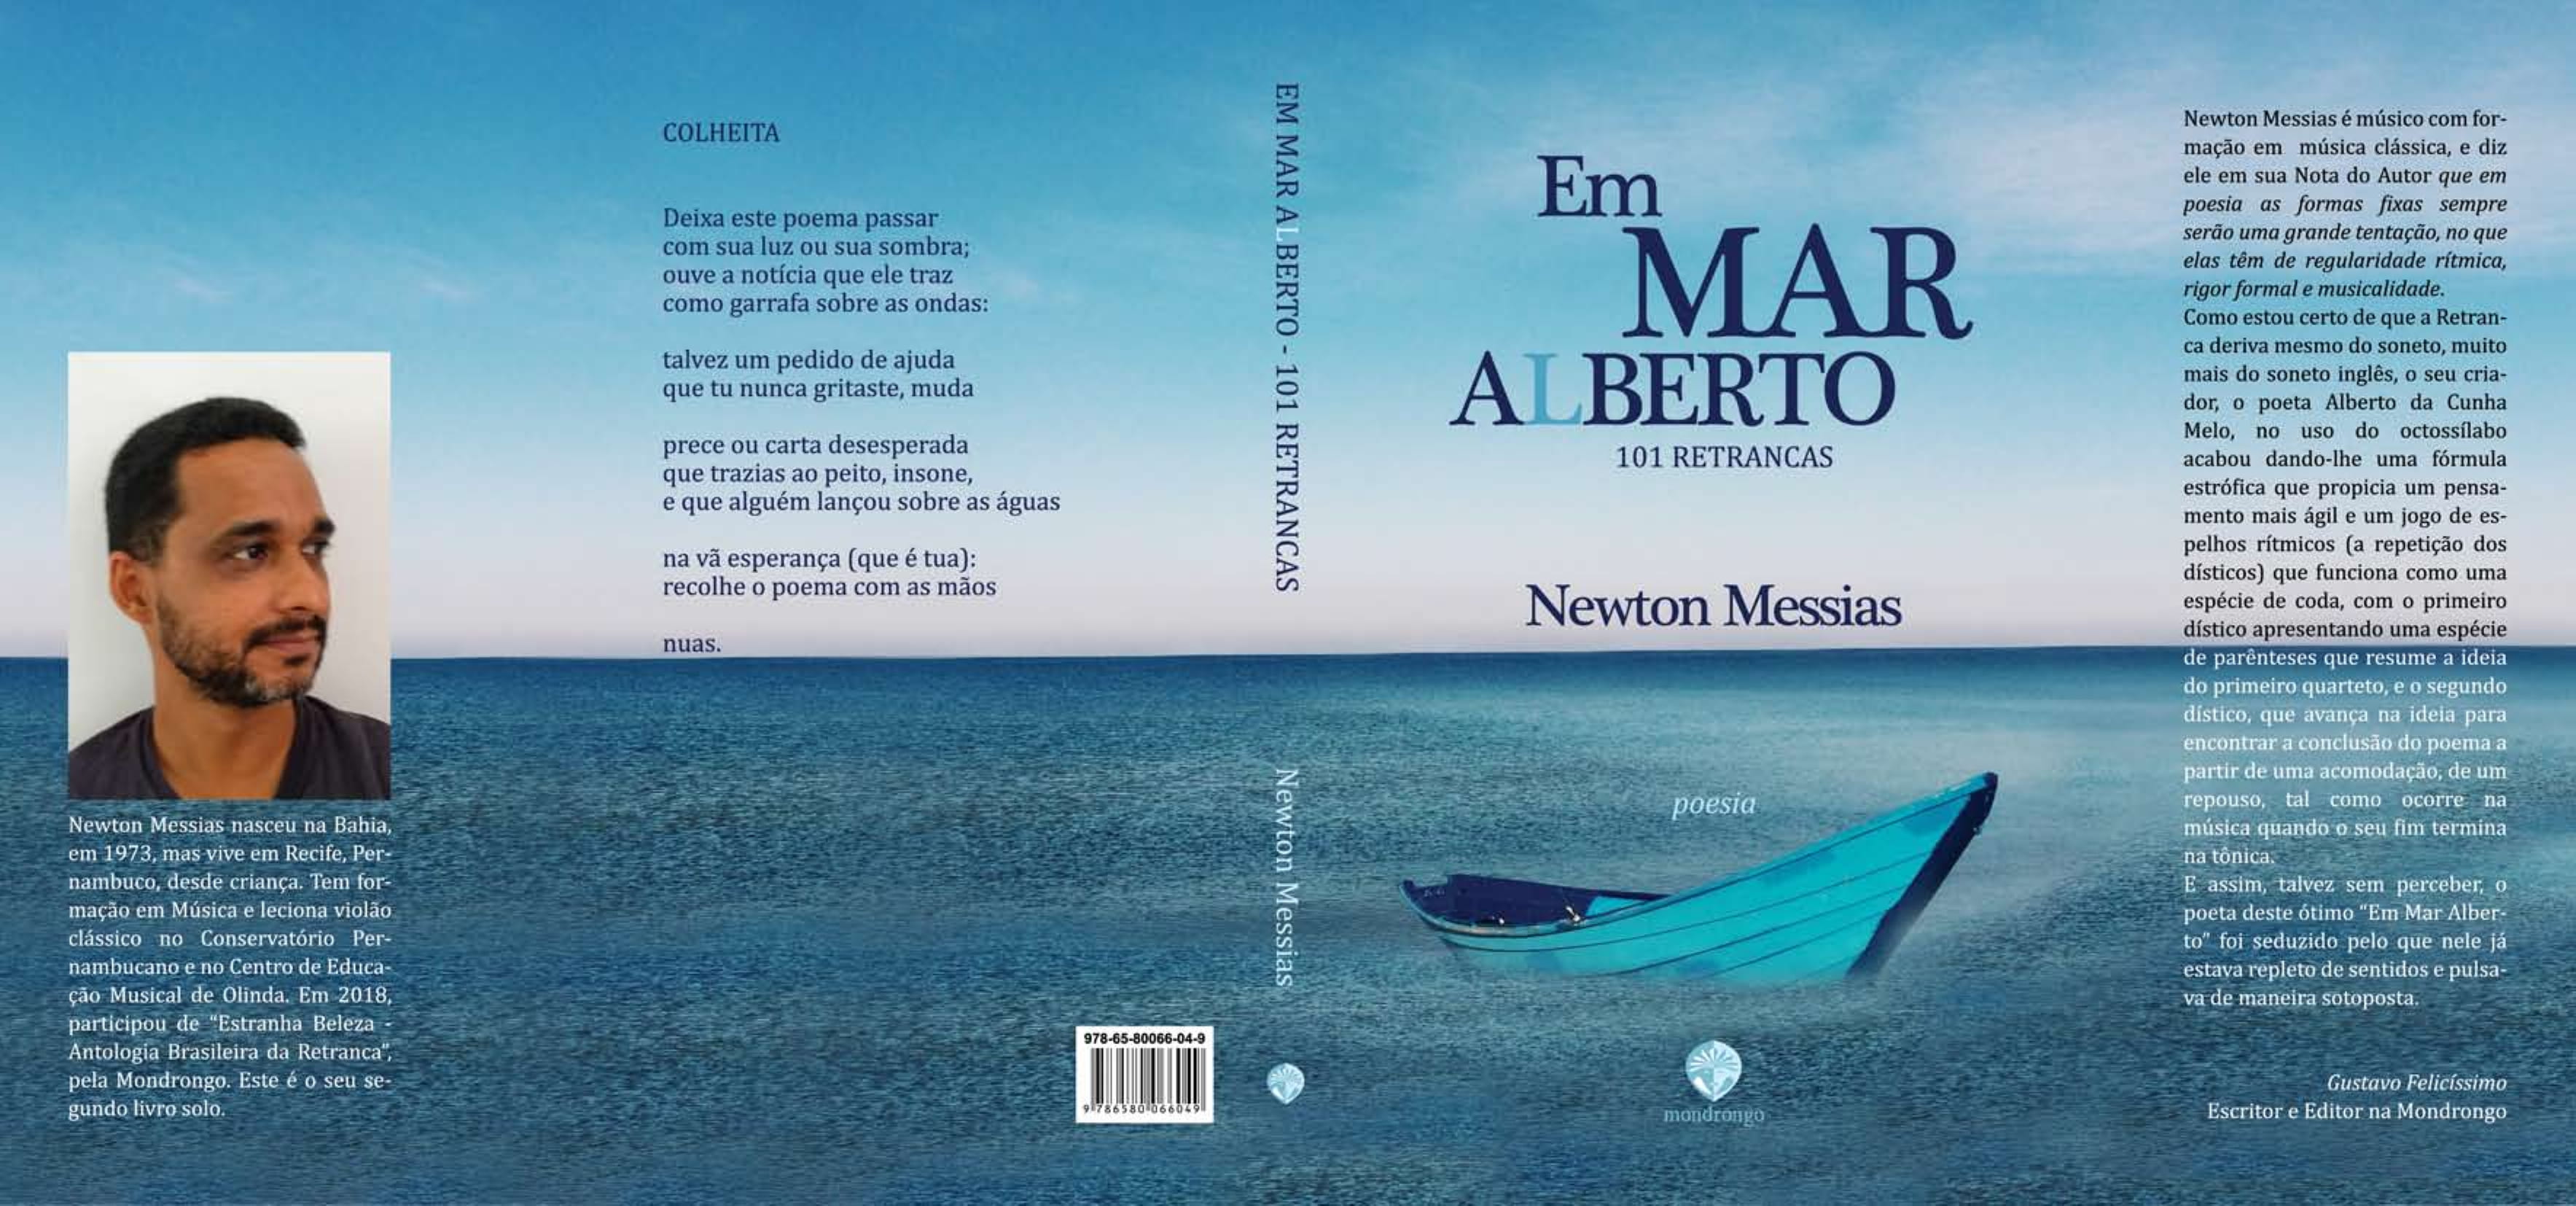 Em mar alberto CAPAABERTA 1 1 - Três poemas do livro "Em Mar Alberto: 101 retrancas" de Newton Messias